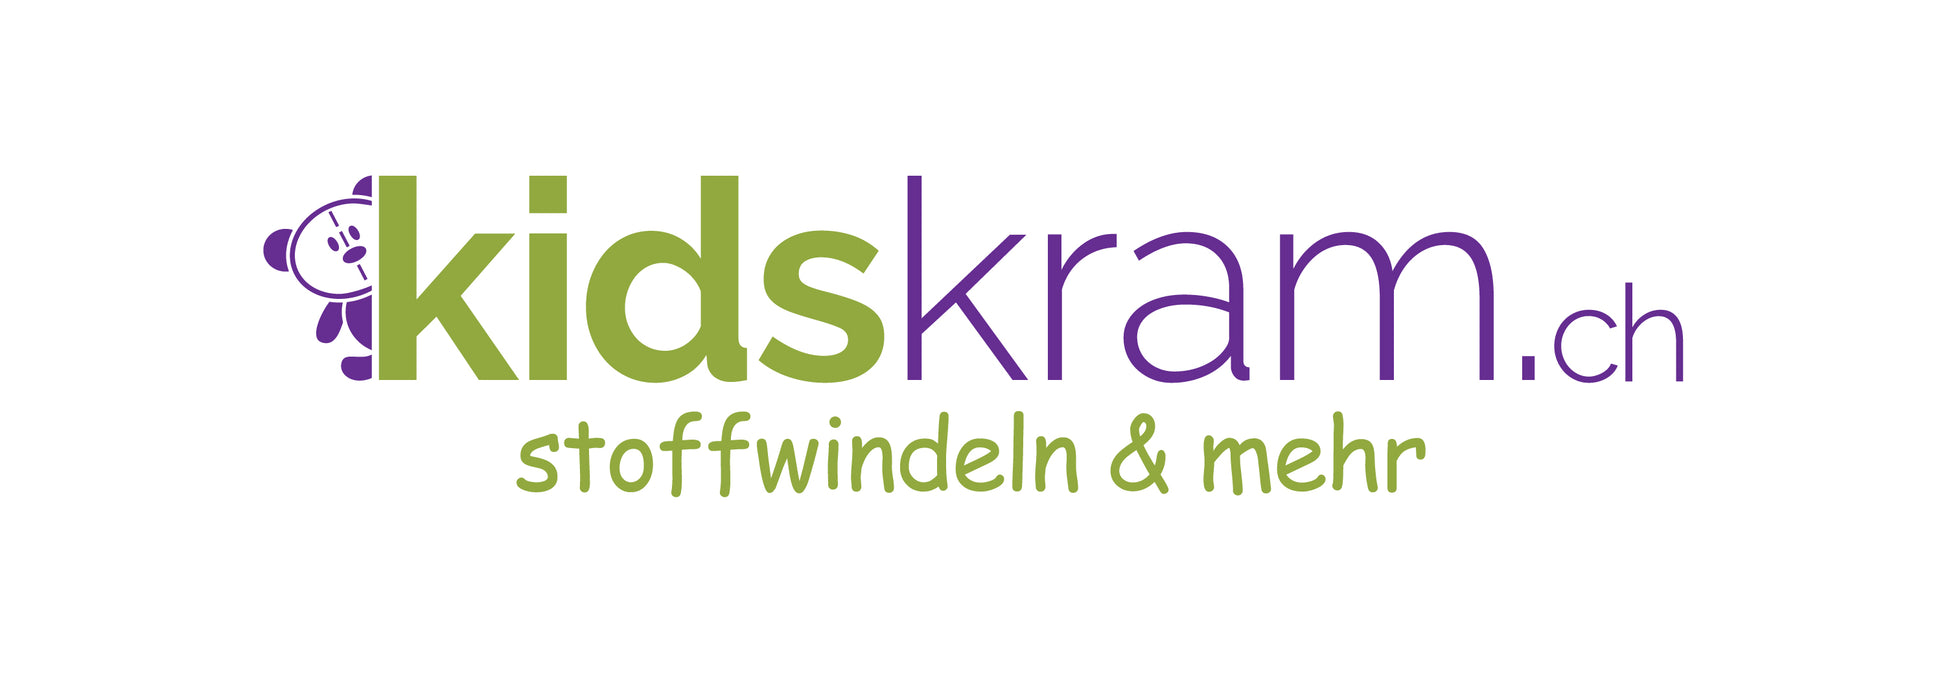 Kidskram.ch Geschenkgutschein - Kidskram.ch